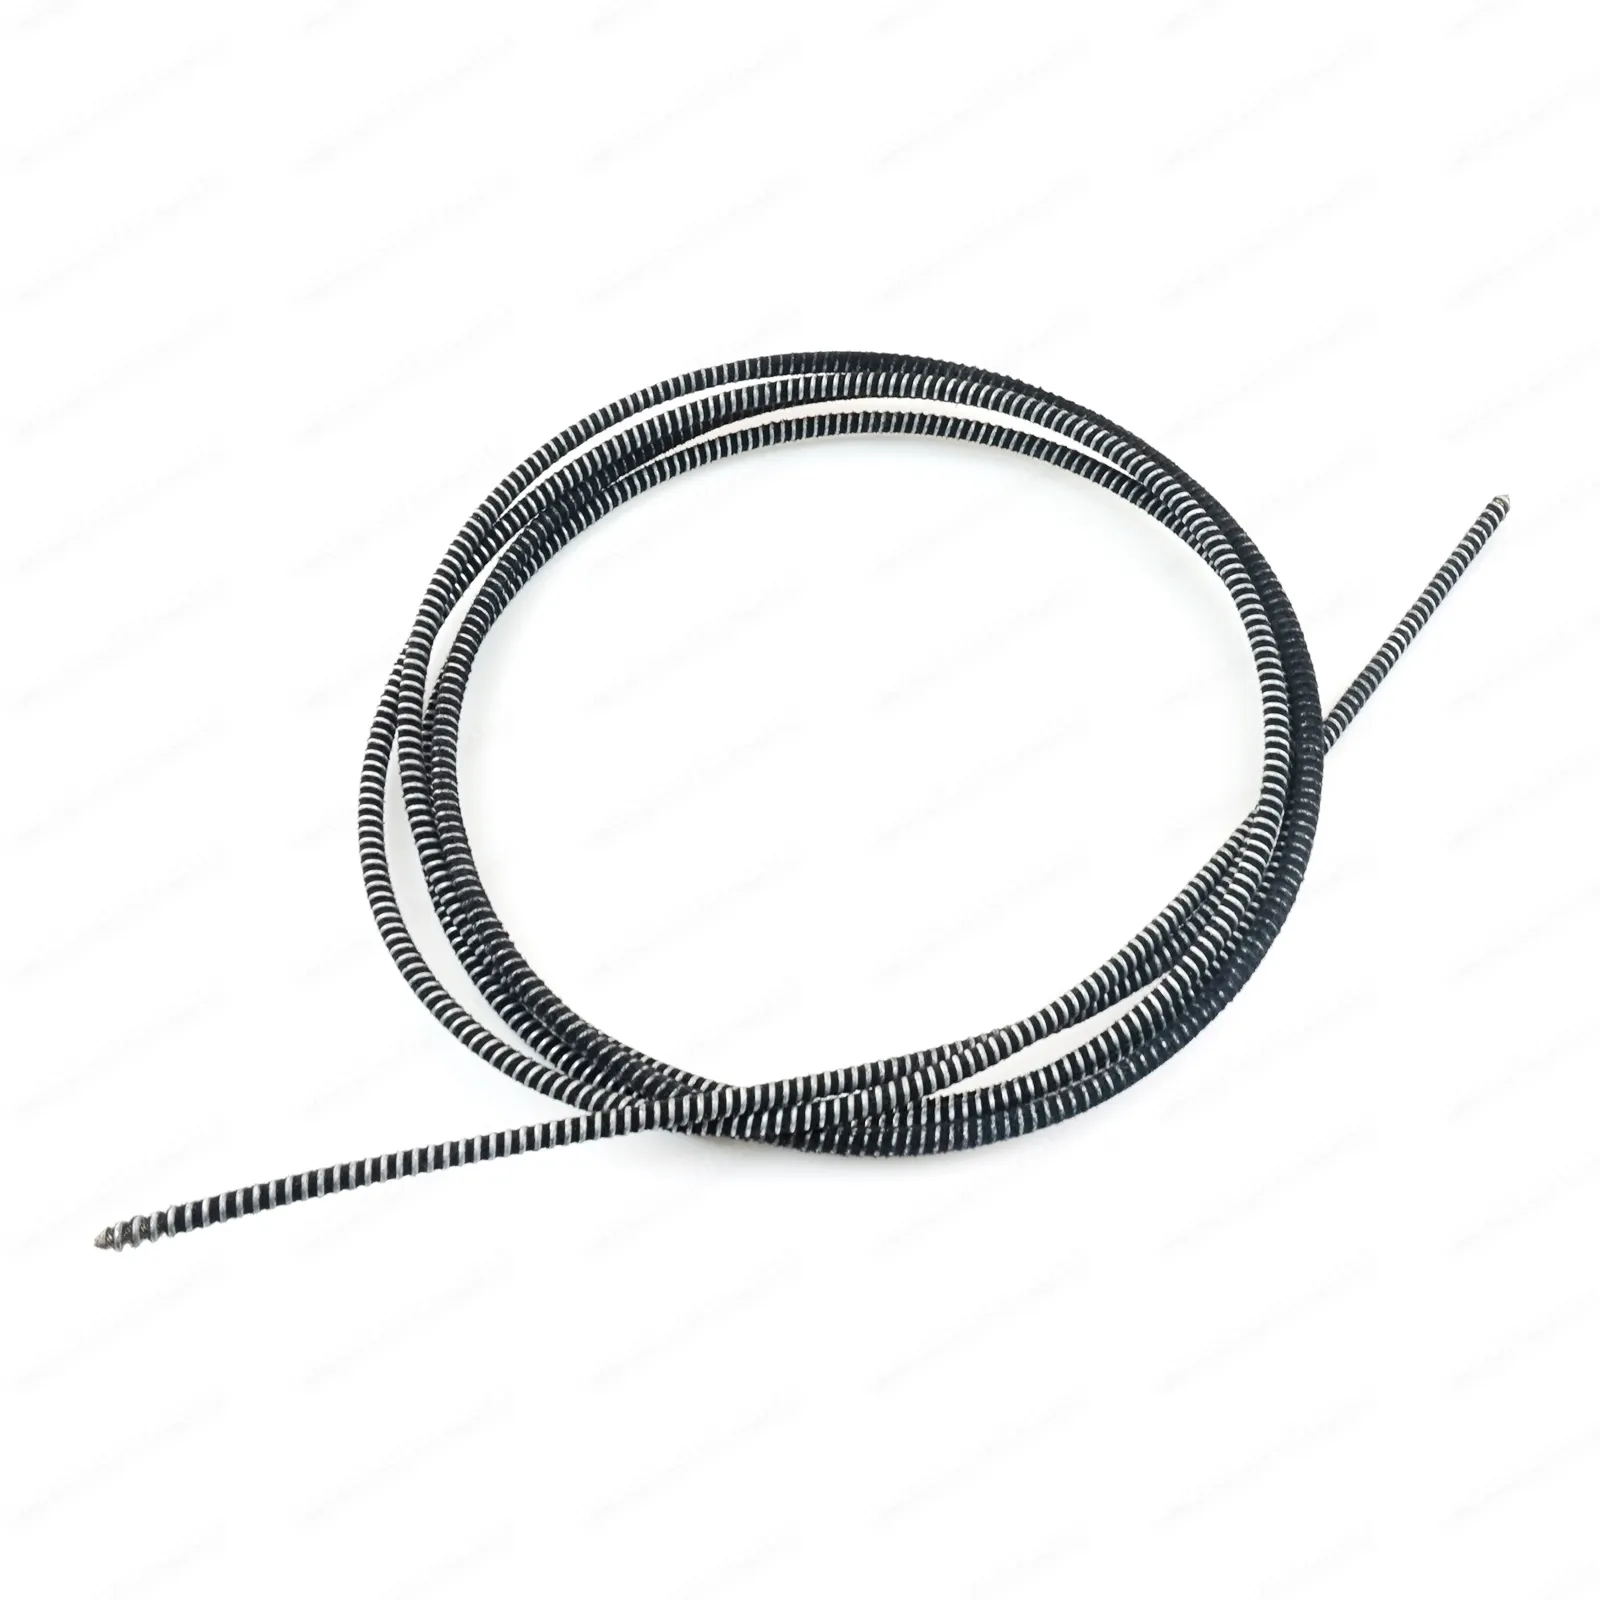 Cable de reparación de techo solar BSR594, Material resistente, longitud: 2 metros, diámetro: 5 mm